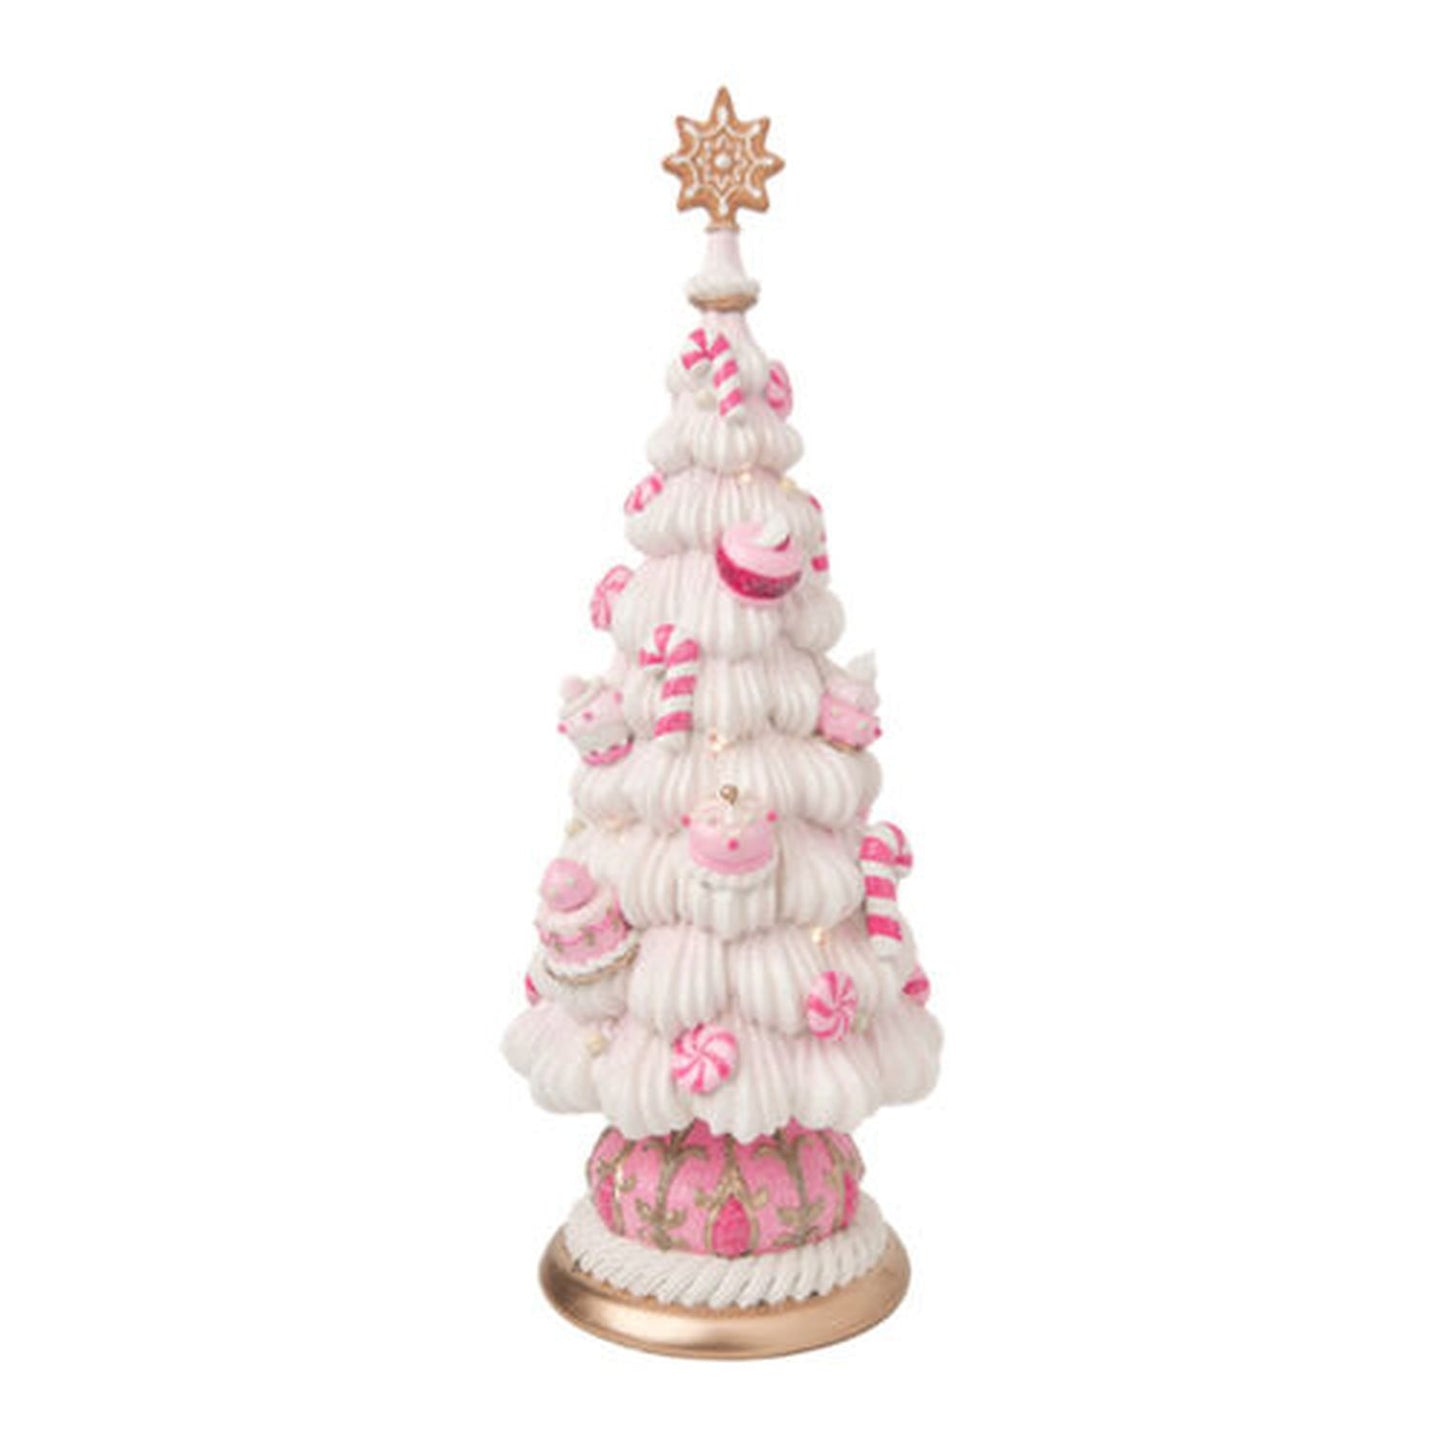 December Diamonds Nutcracker Sweet Shoppe Sweet Tree Figurine